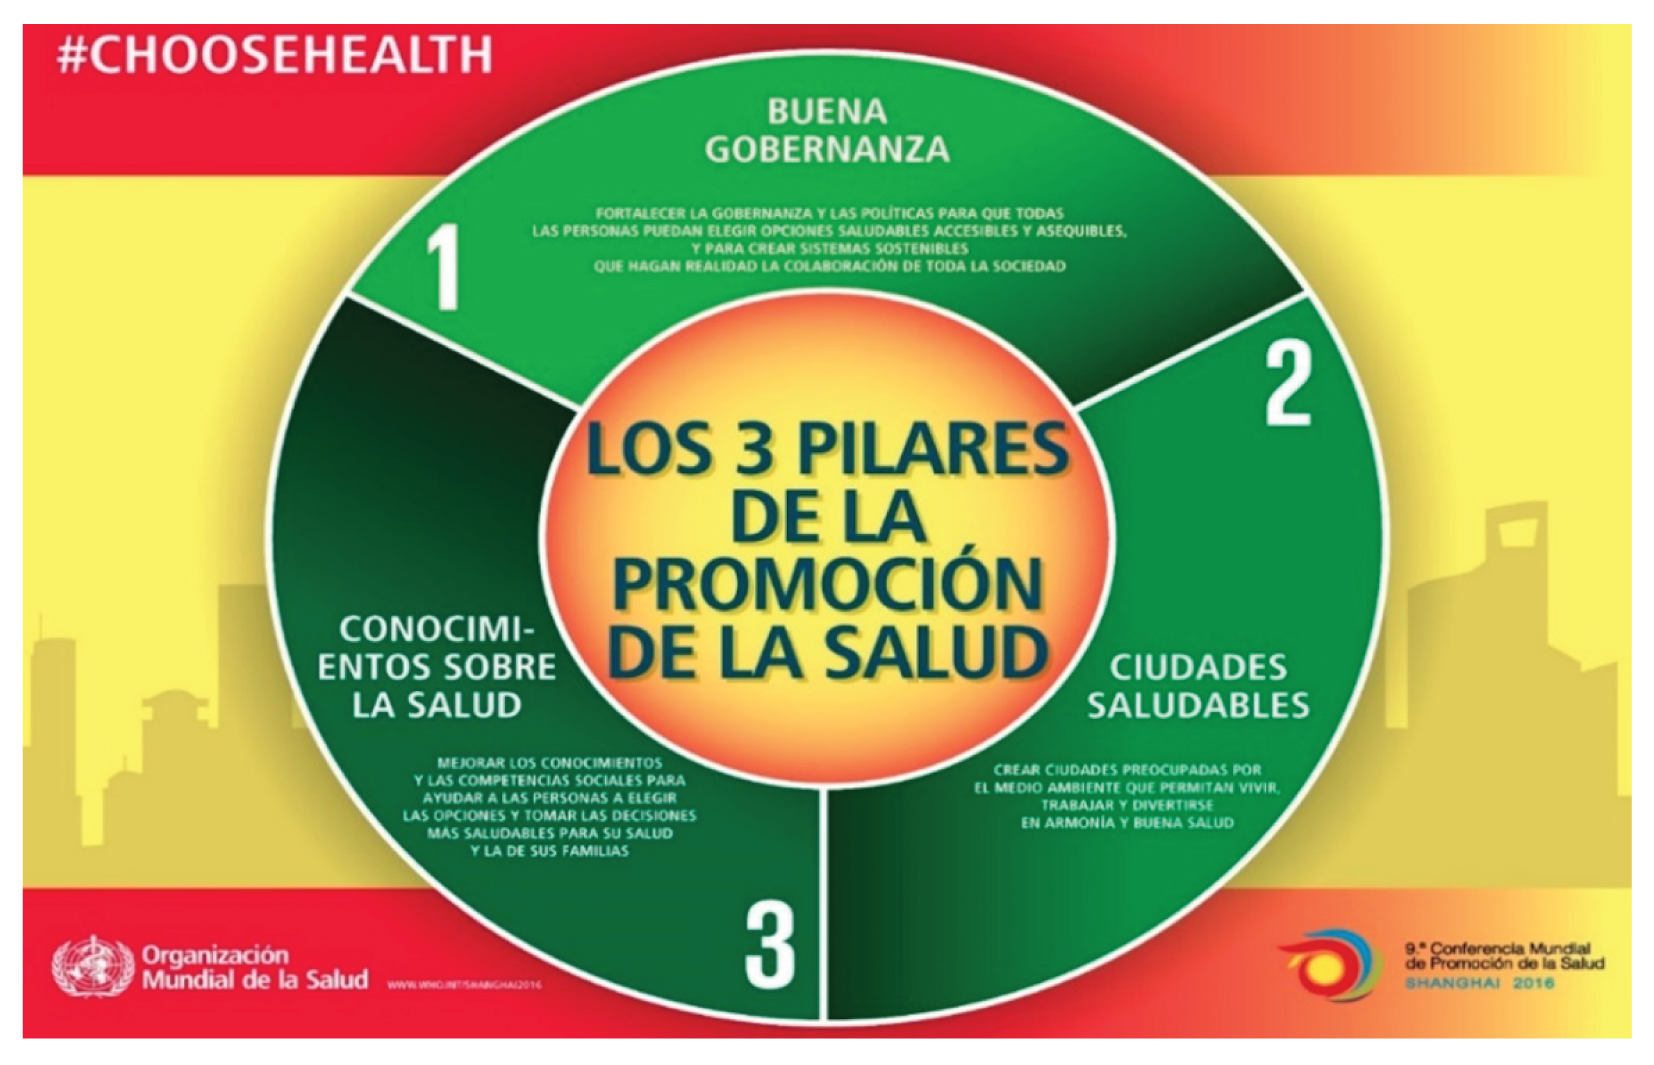 Los 3 pilares de la Promoción de la Salud
